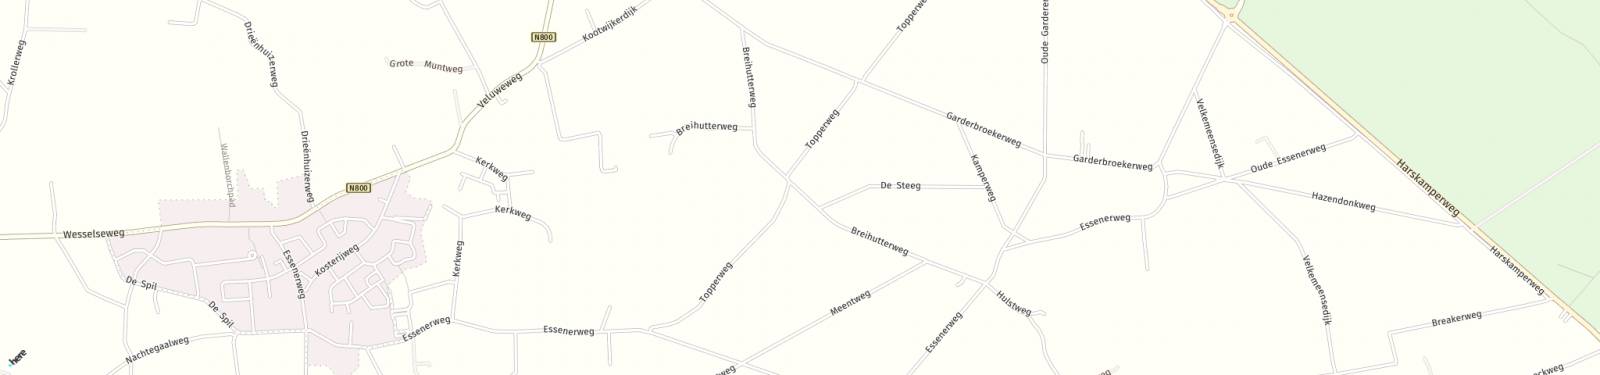 Kaart met locatie Huurwoning Breihutterweg